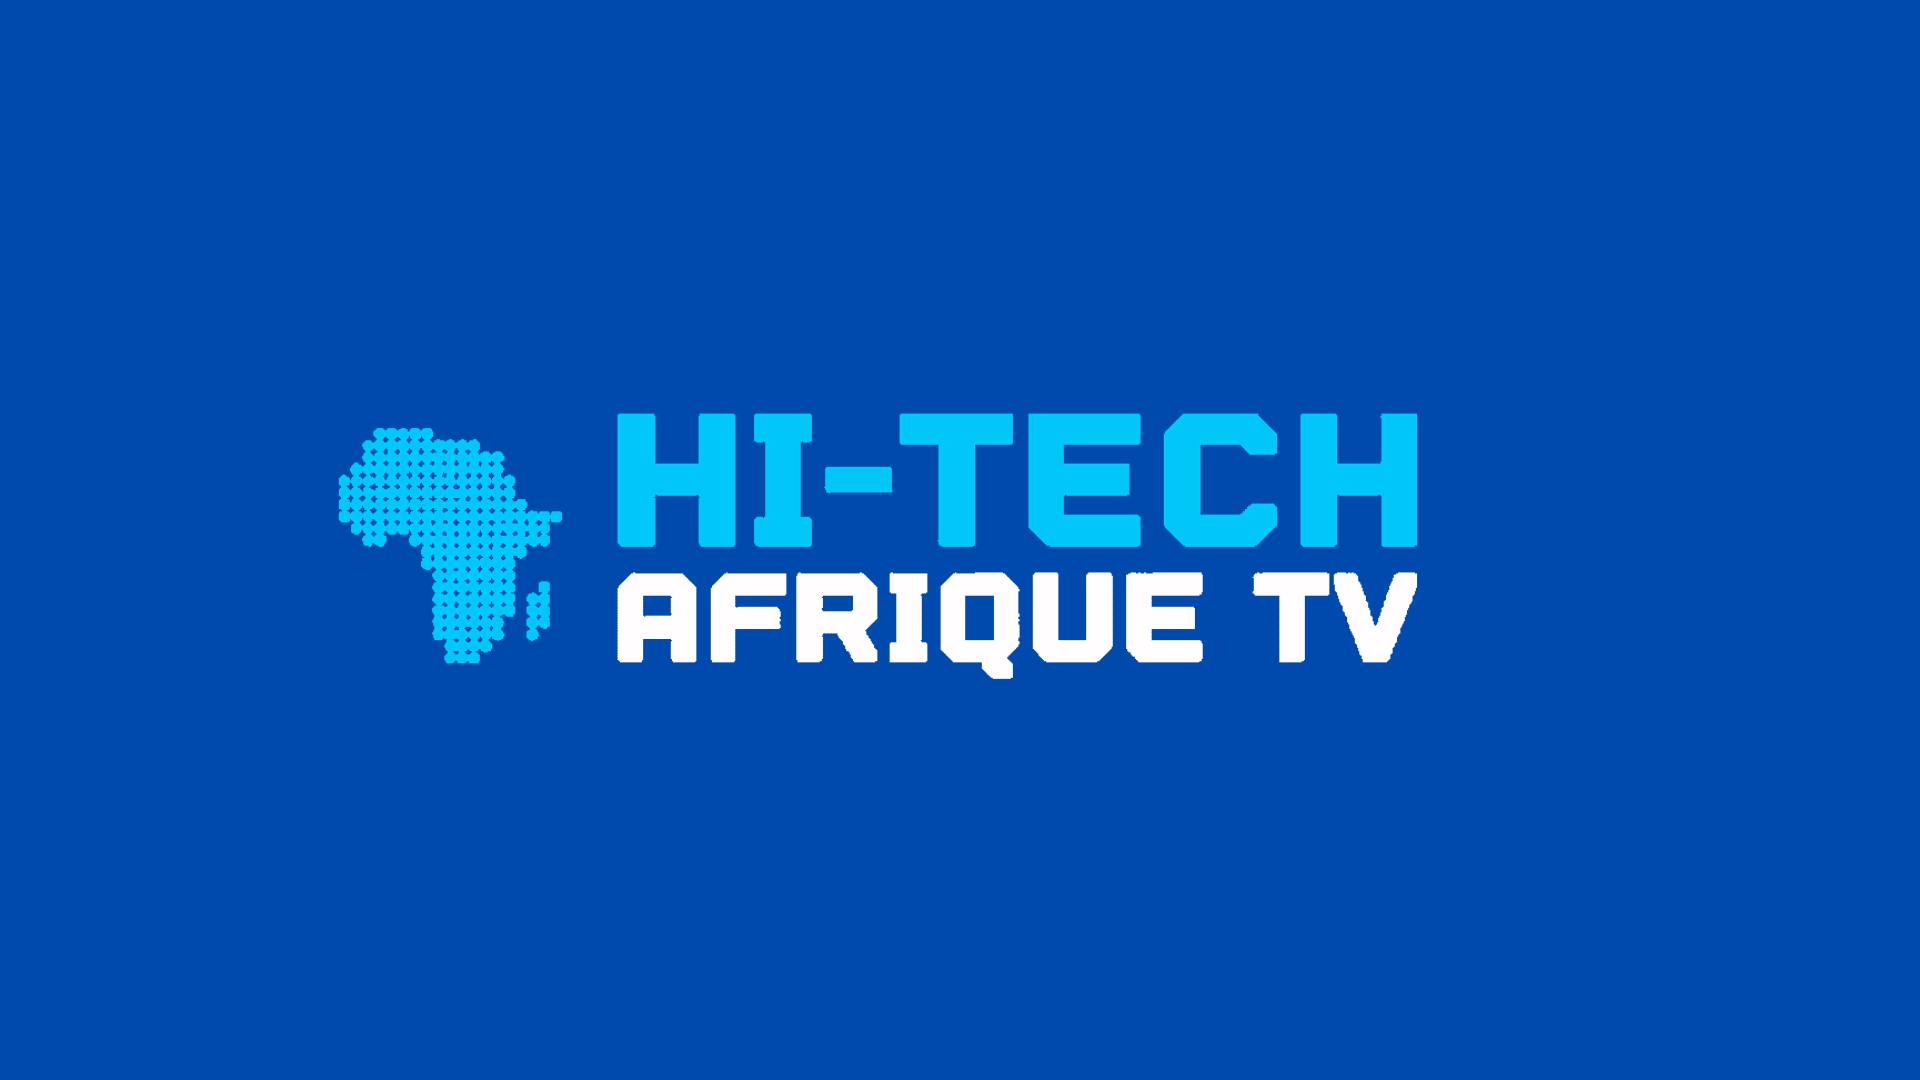 HI-TECH AFRIQUE TV logo